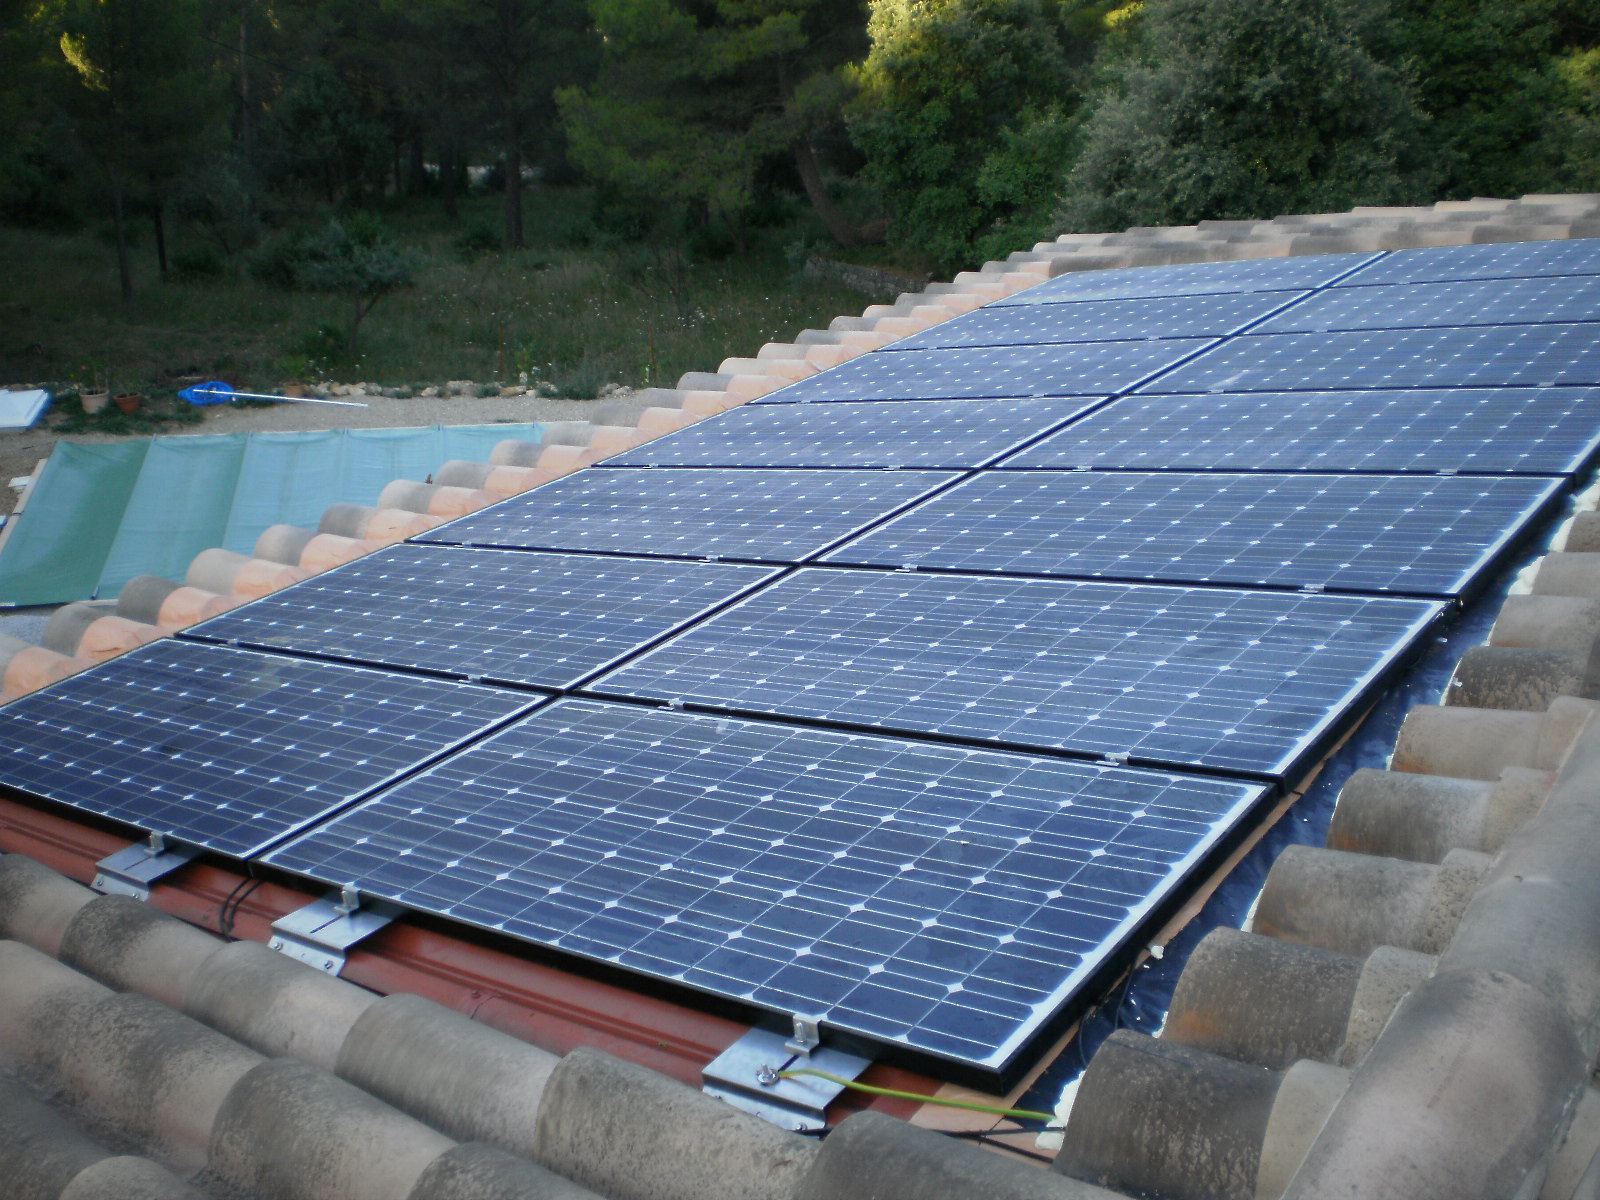 Installation panneaux photovoltaiques